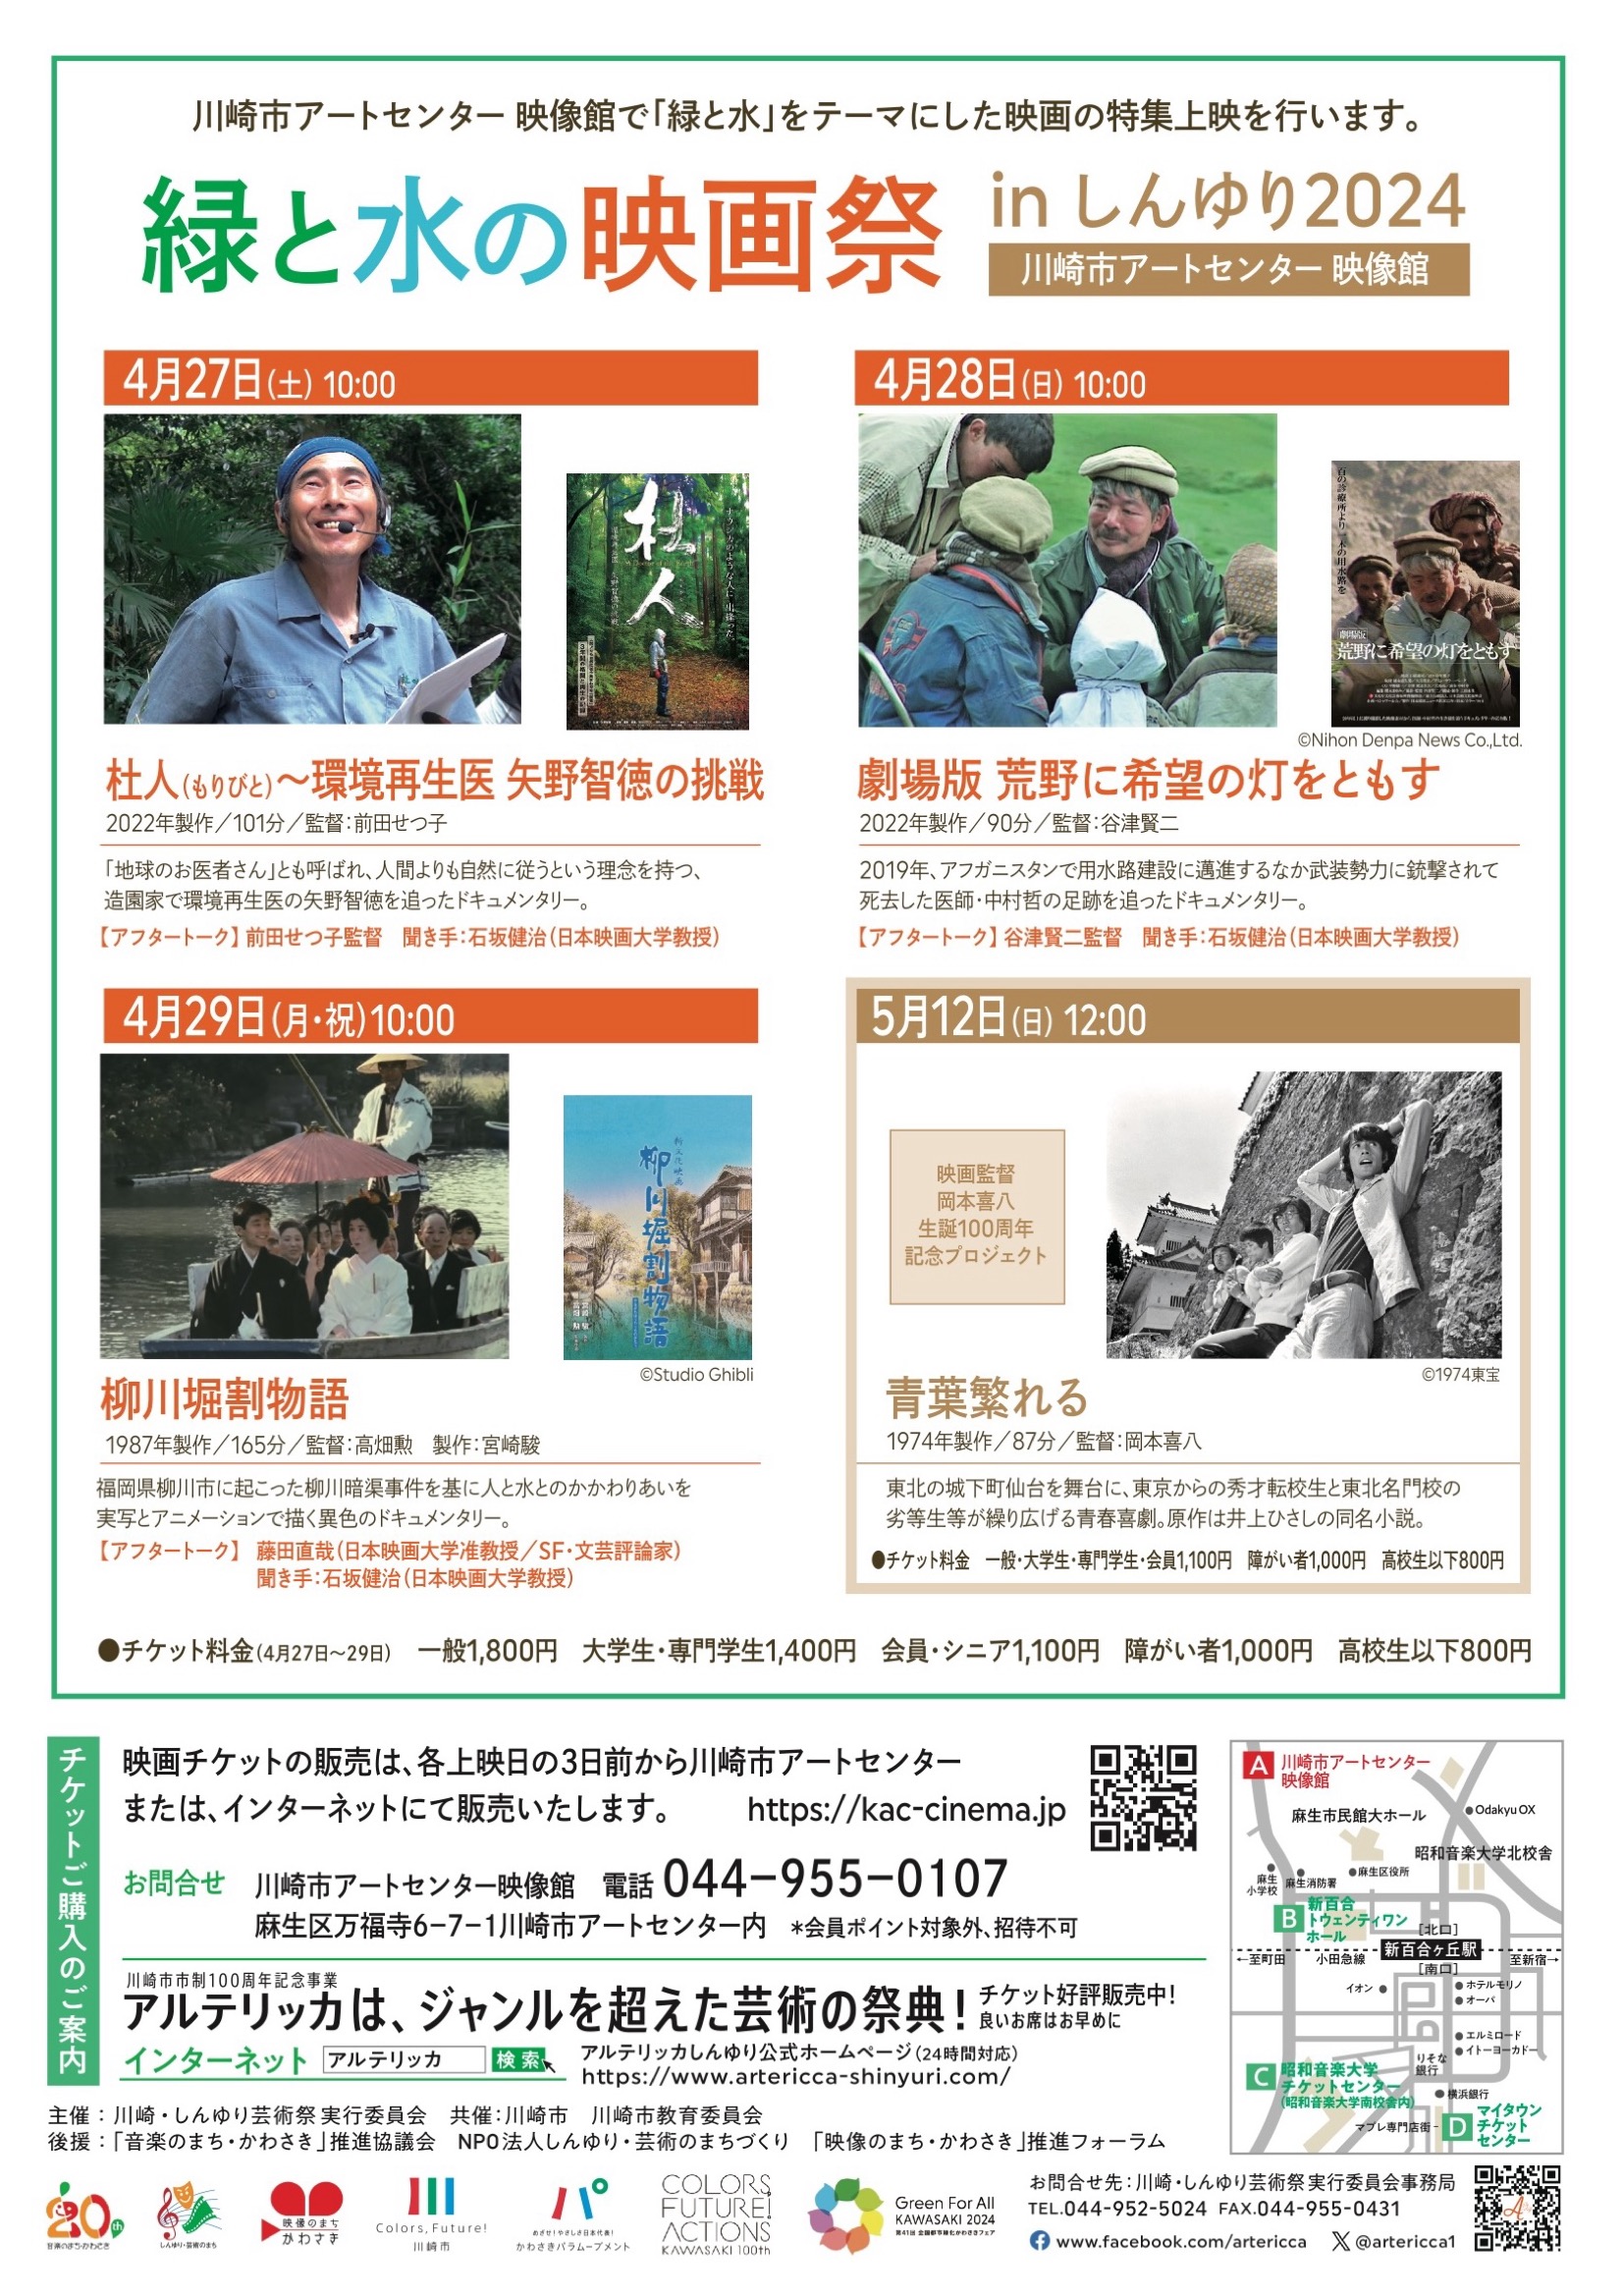 『緑と水のアート』 映画監督・岡本喜八 生誕100周年記念プロジェクト 「青葉繁れる」